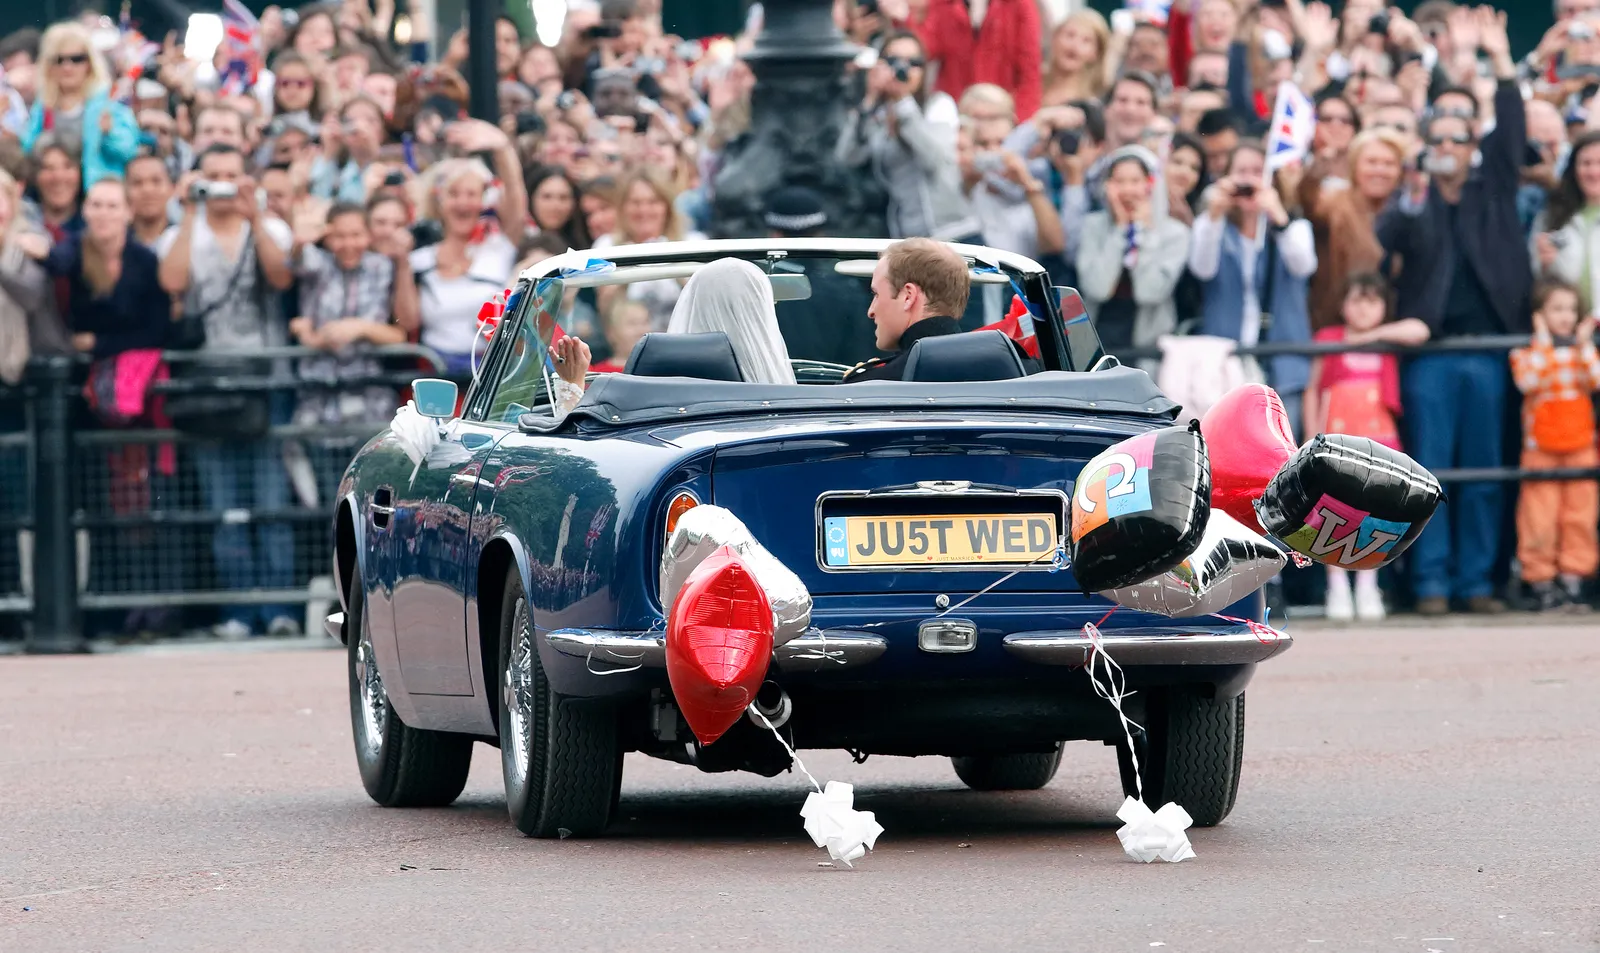 Książę i księżna Cambridge przejechali ulicami w astonie martinie DB6 volante udekorowanym przez ich przyjaciół (fot. Getty Images)